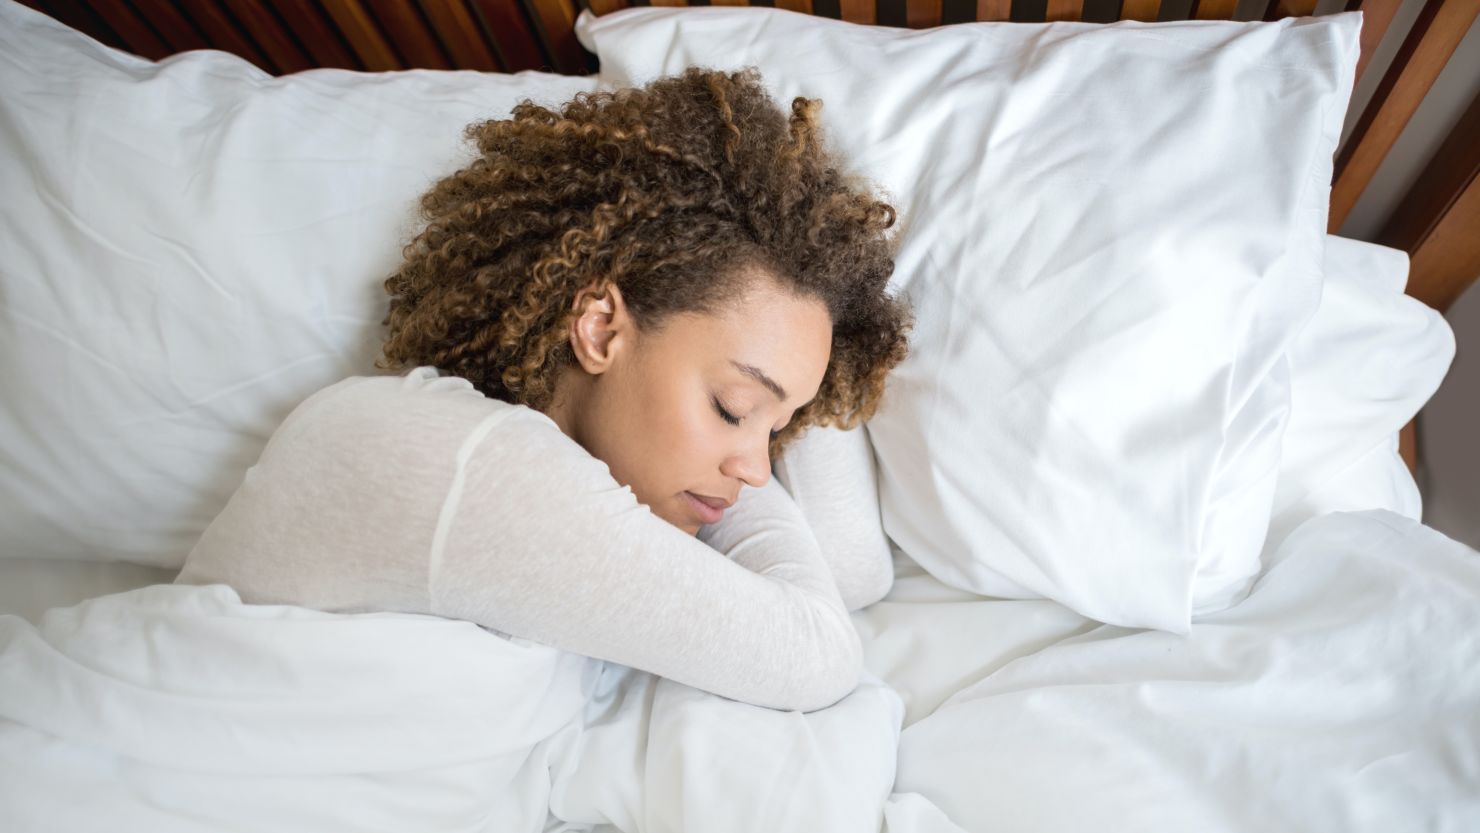 9 Best Leg Pillows For Sleeping for 2023